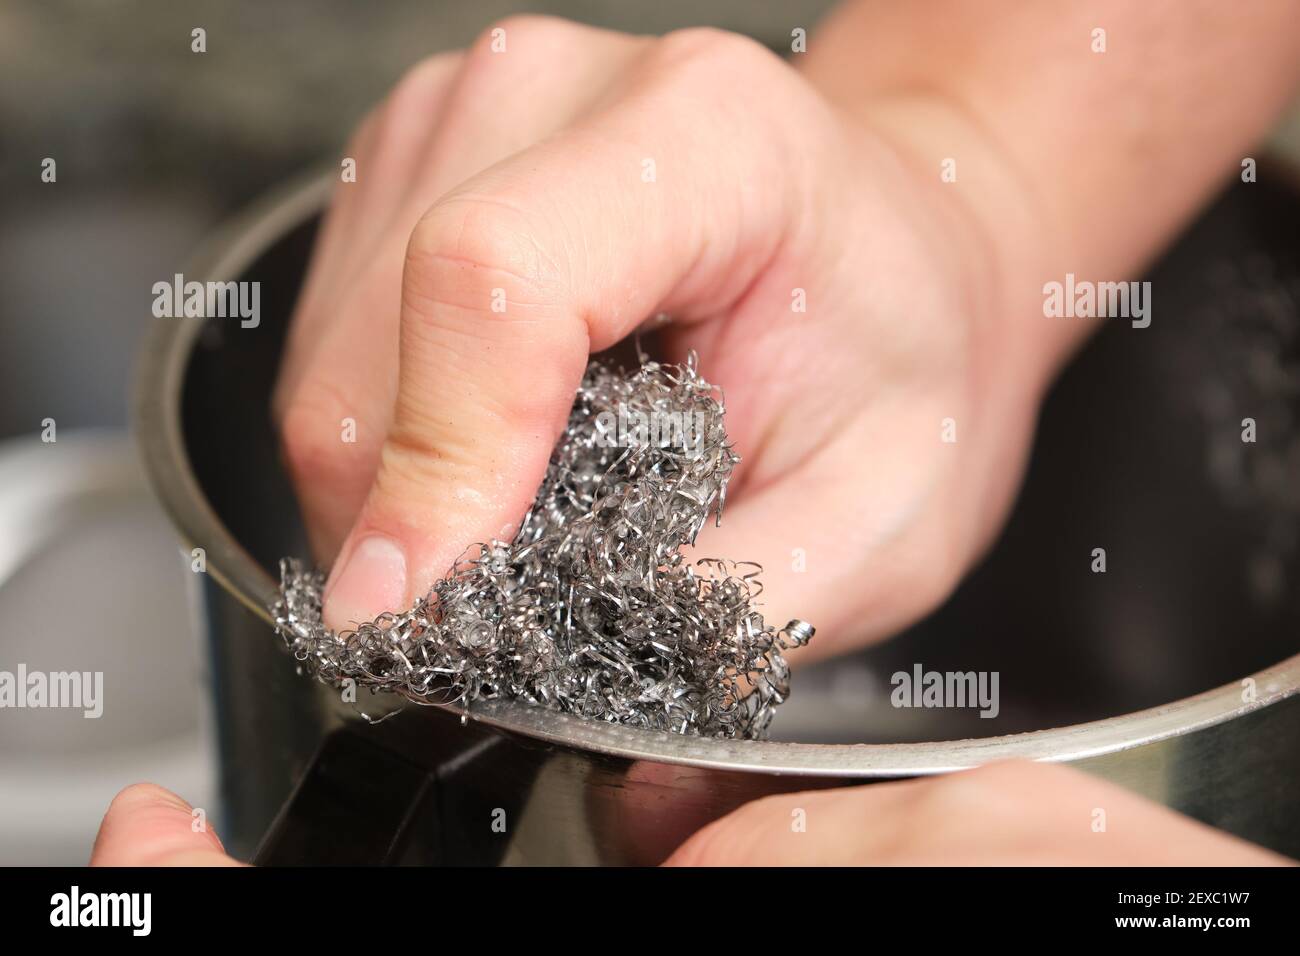 Zugeschnittenes Bild eines Mannes Hände waschen einen Topf oder das Geschirr mit einem Edelstahl Schwamm Schrubber tun. Reinigung der Hausarbeiten. Stockfoto